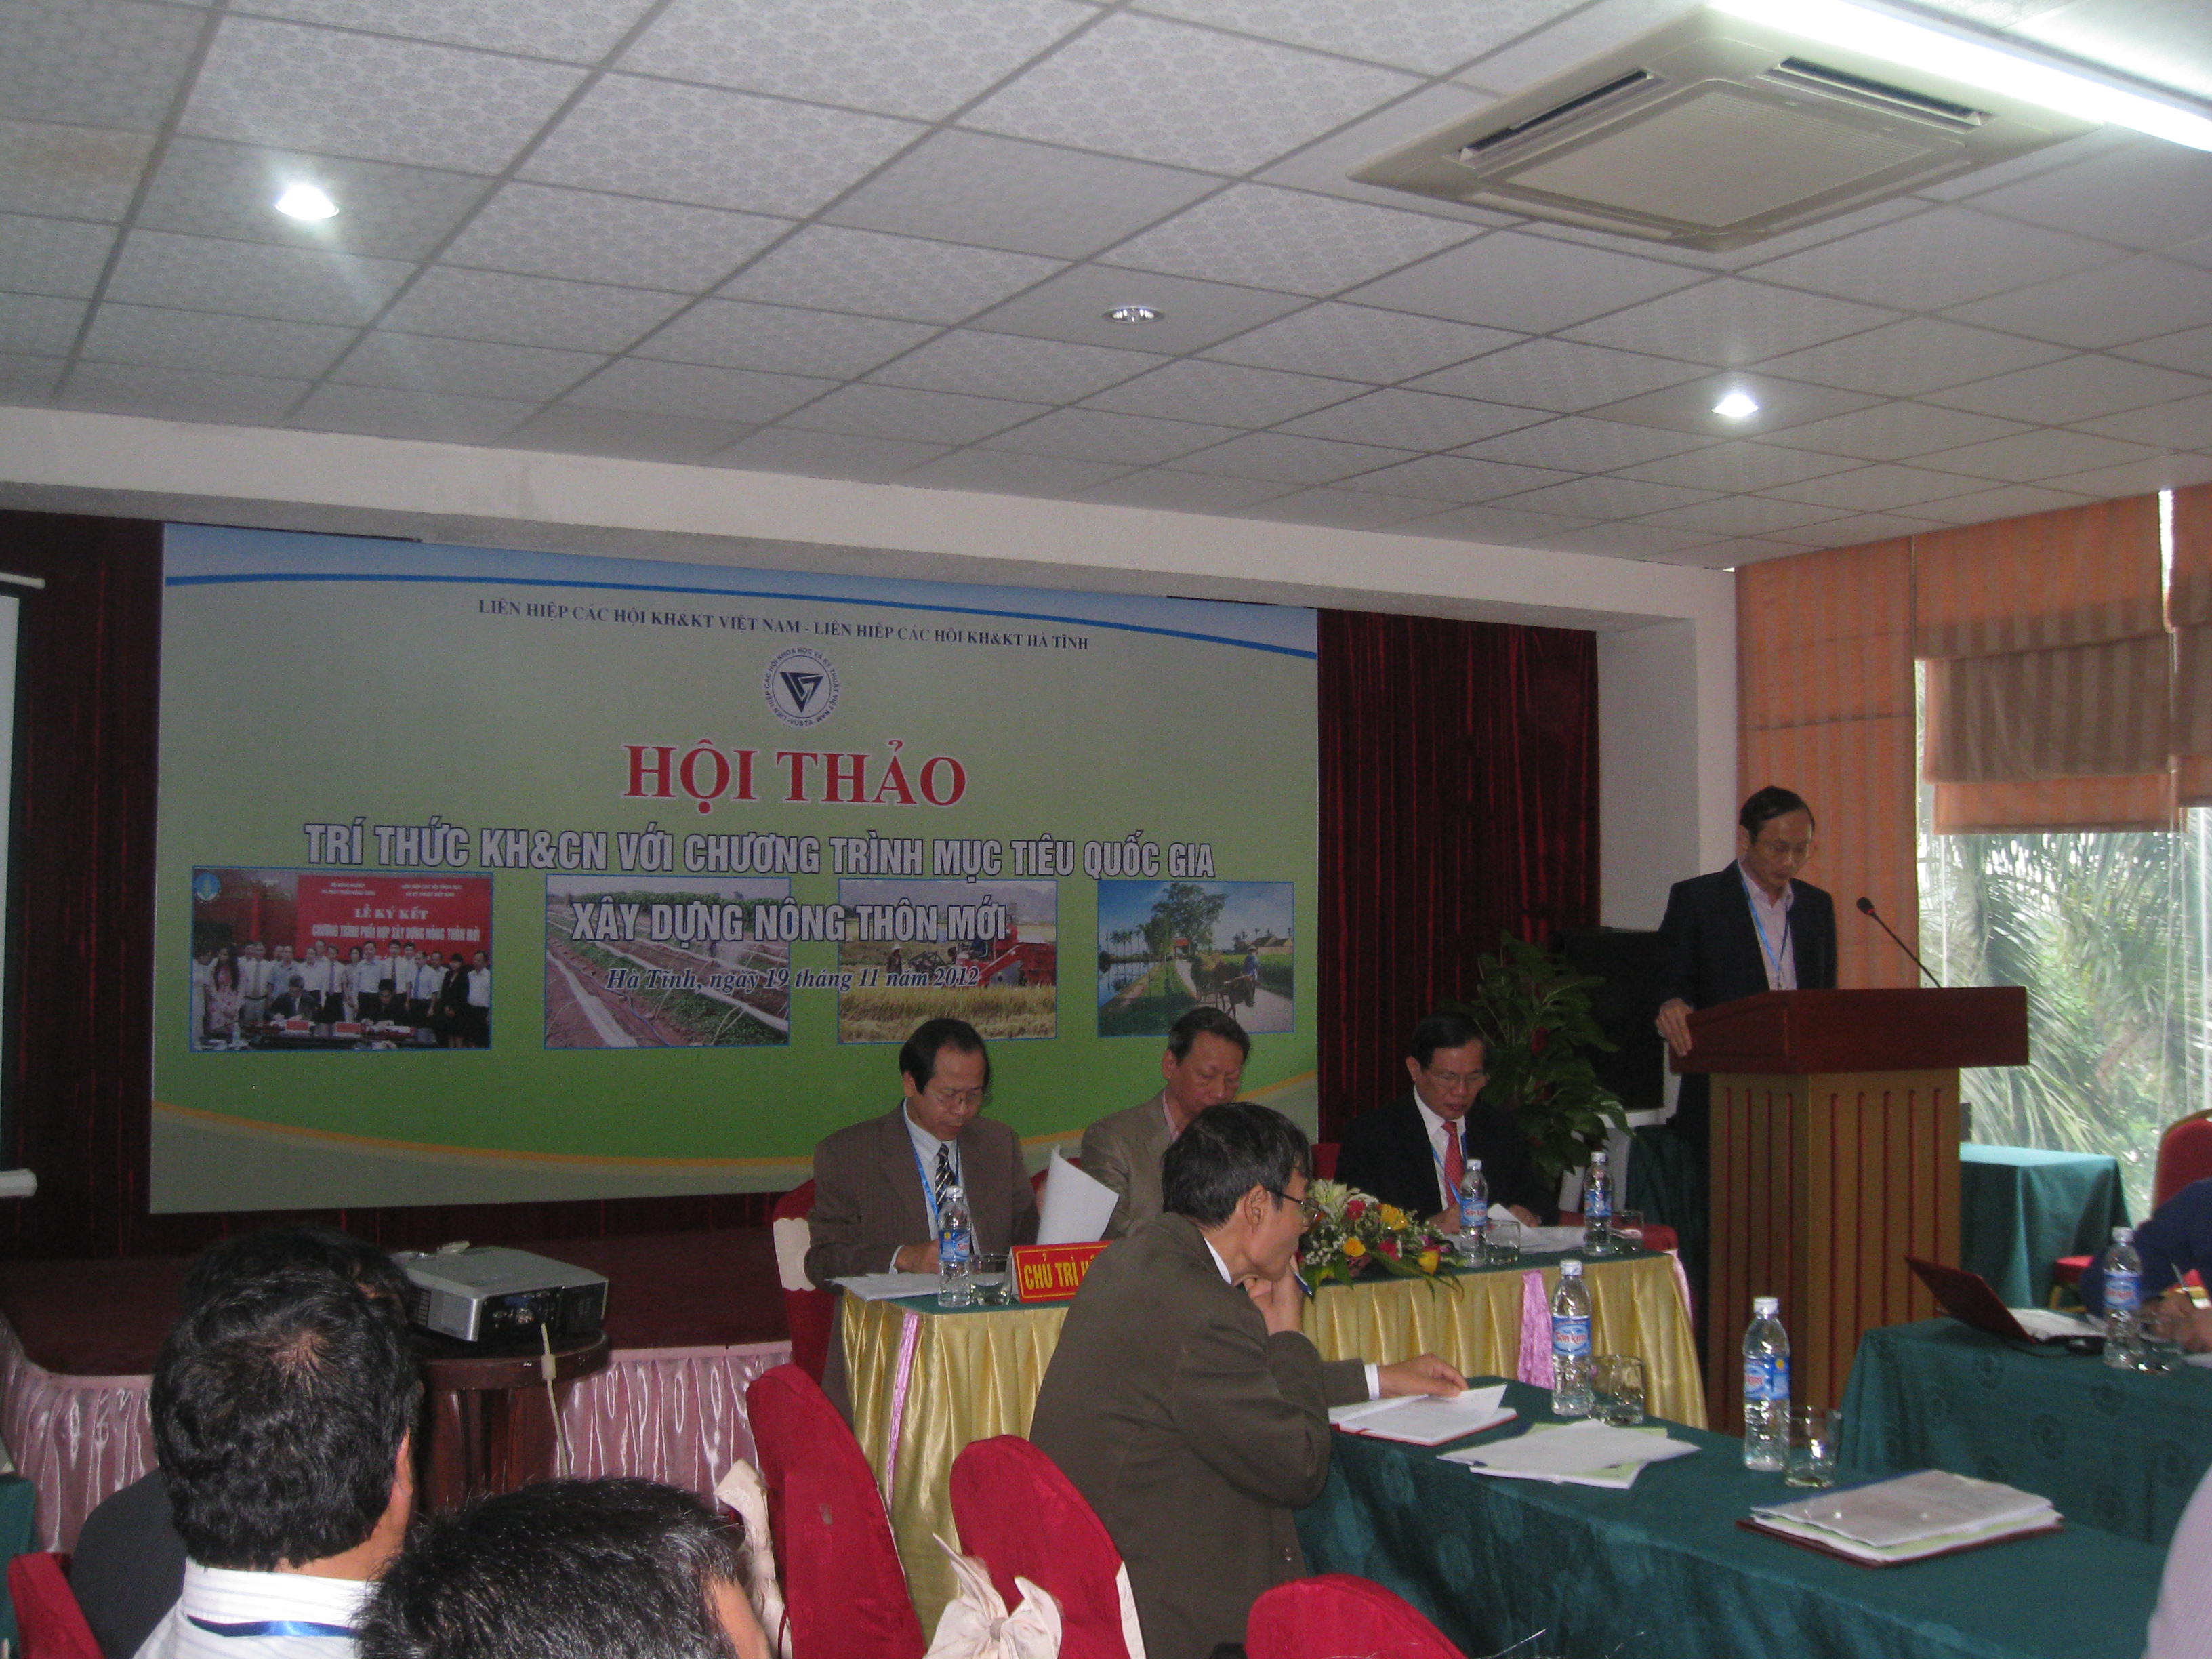 Hội thảo “Trí thức Khoa học và Công nghệ với Chương trình mục tiêu quốc gia xây dựng nông thôn mới” của Liên hiệp Hội Việt Nam tại tỉnh Hà Tĩnh